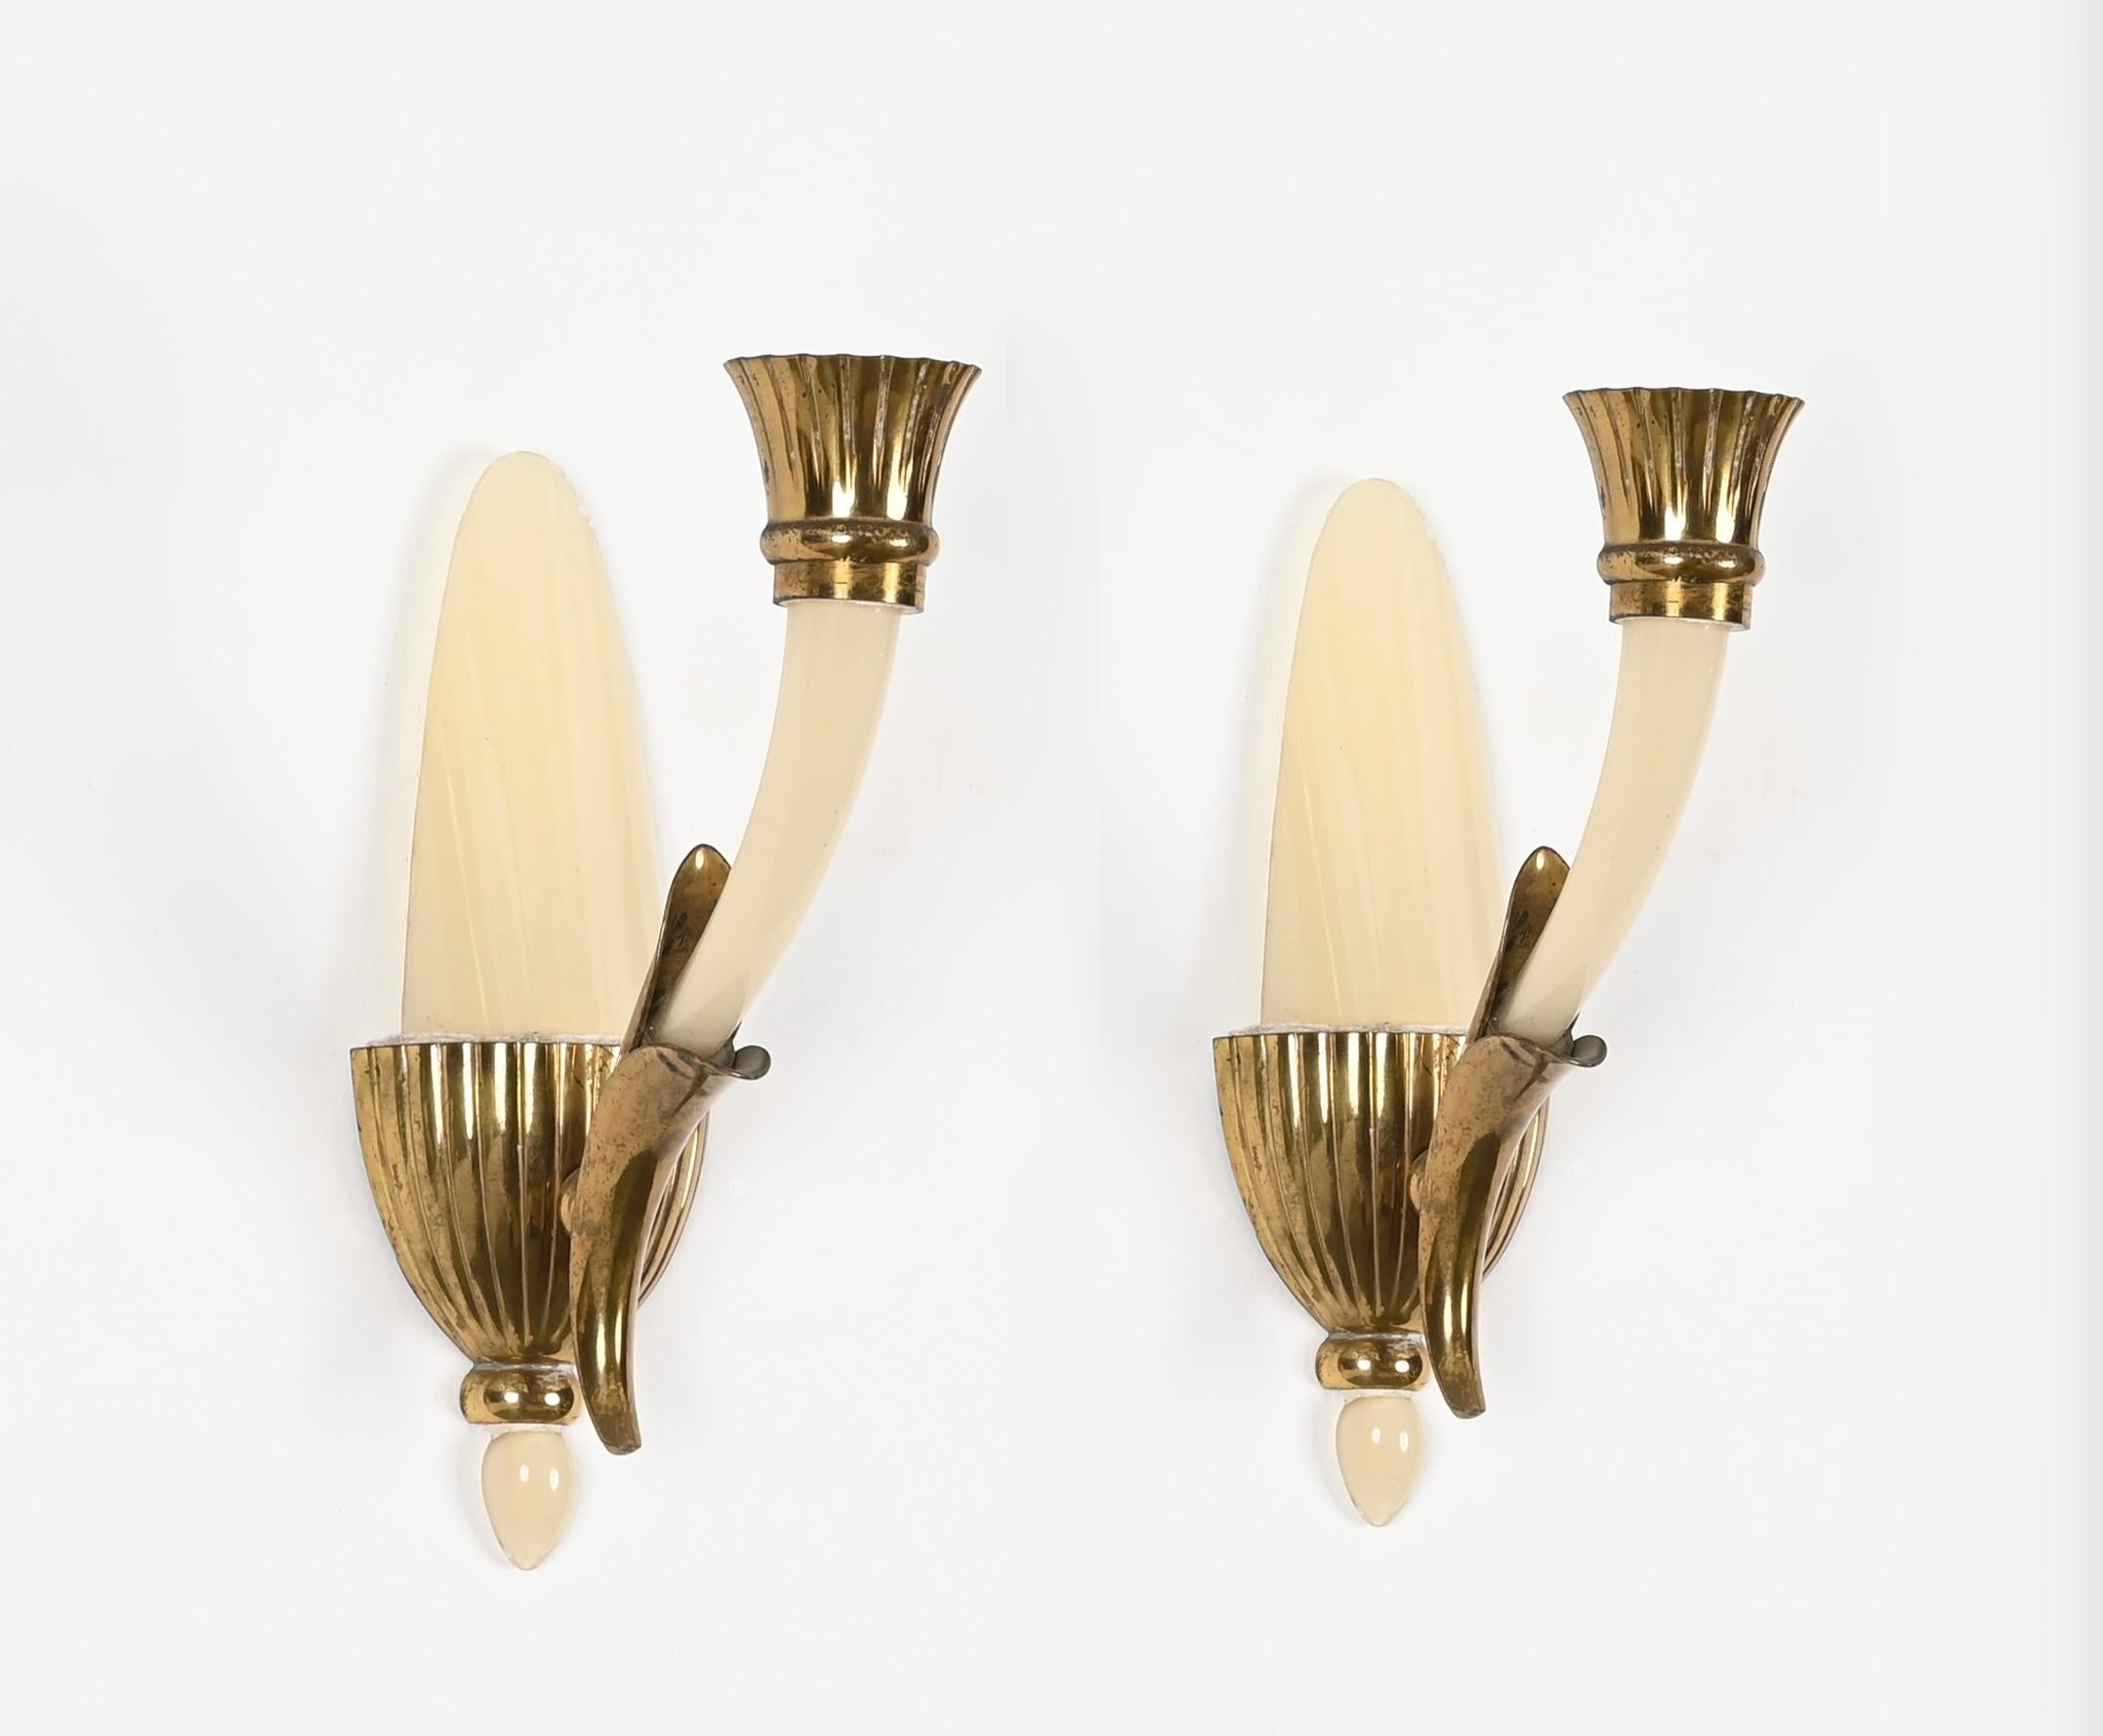 Wunderschönes Paar Wandlampen aus elfenbeinfarbenem Murano-Kunstglas und Messing. Diese charmanten Wandleuchter wurden von Guglielmo Ulrich entworfen und in den 1940er Jahren in Venedig hergestellt. 

Die Qualität dieser seltenen Wandleuchten ist